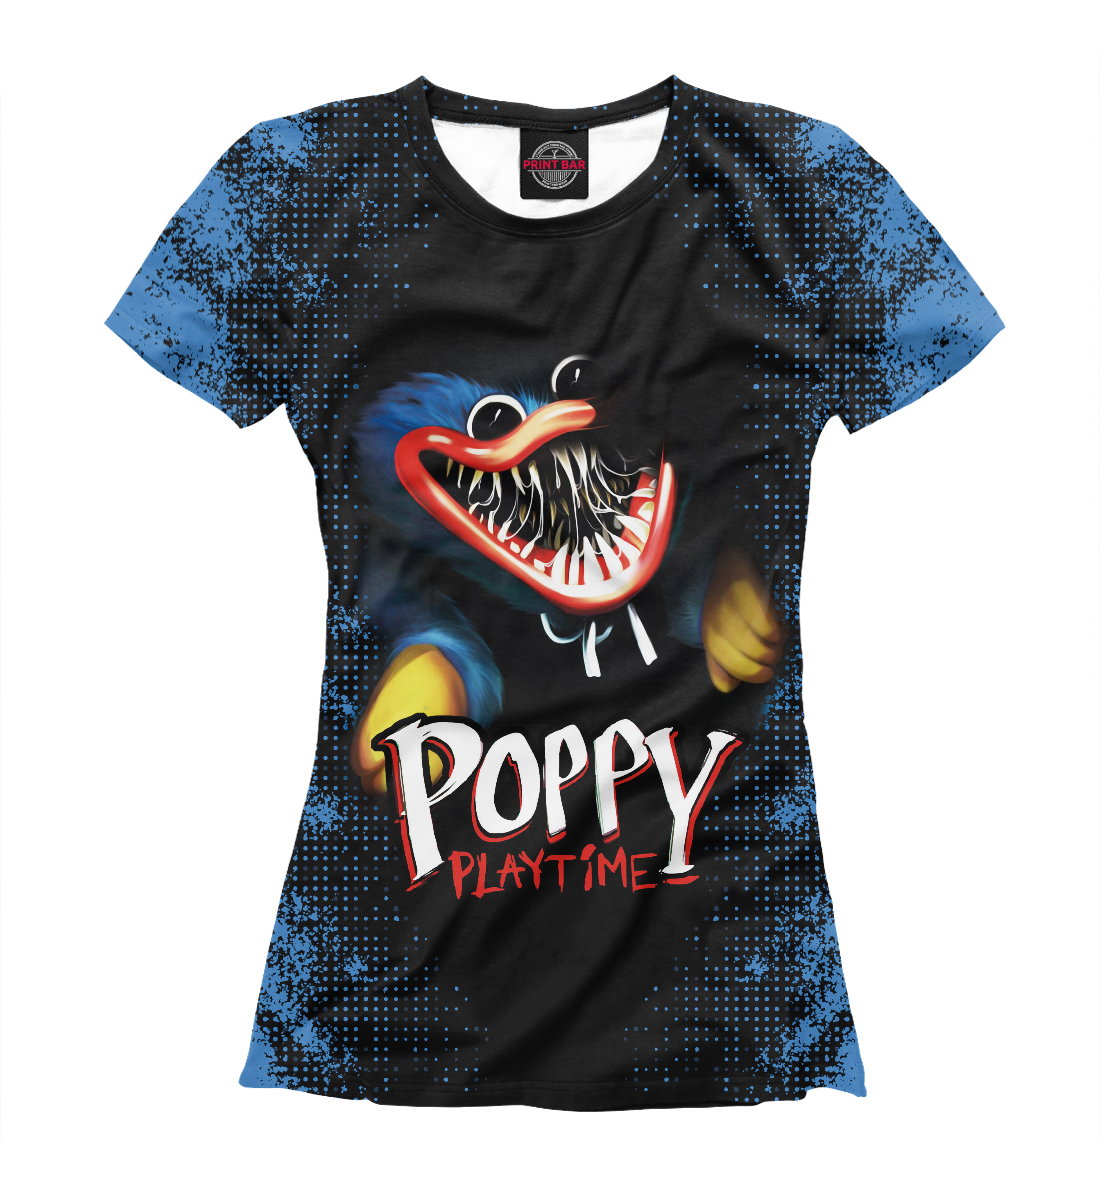 Футболка Poppy Playtime Хагги Вагги для девочек, артикул: PPE-806439-fut-1mp